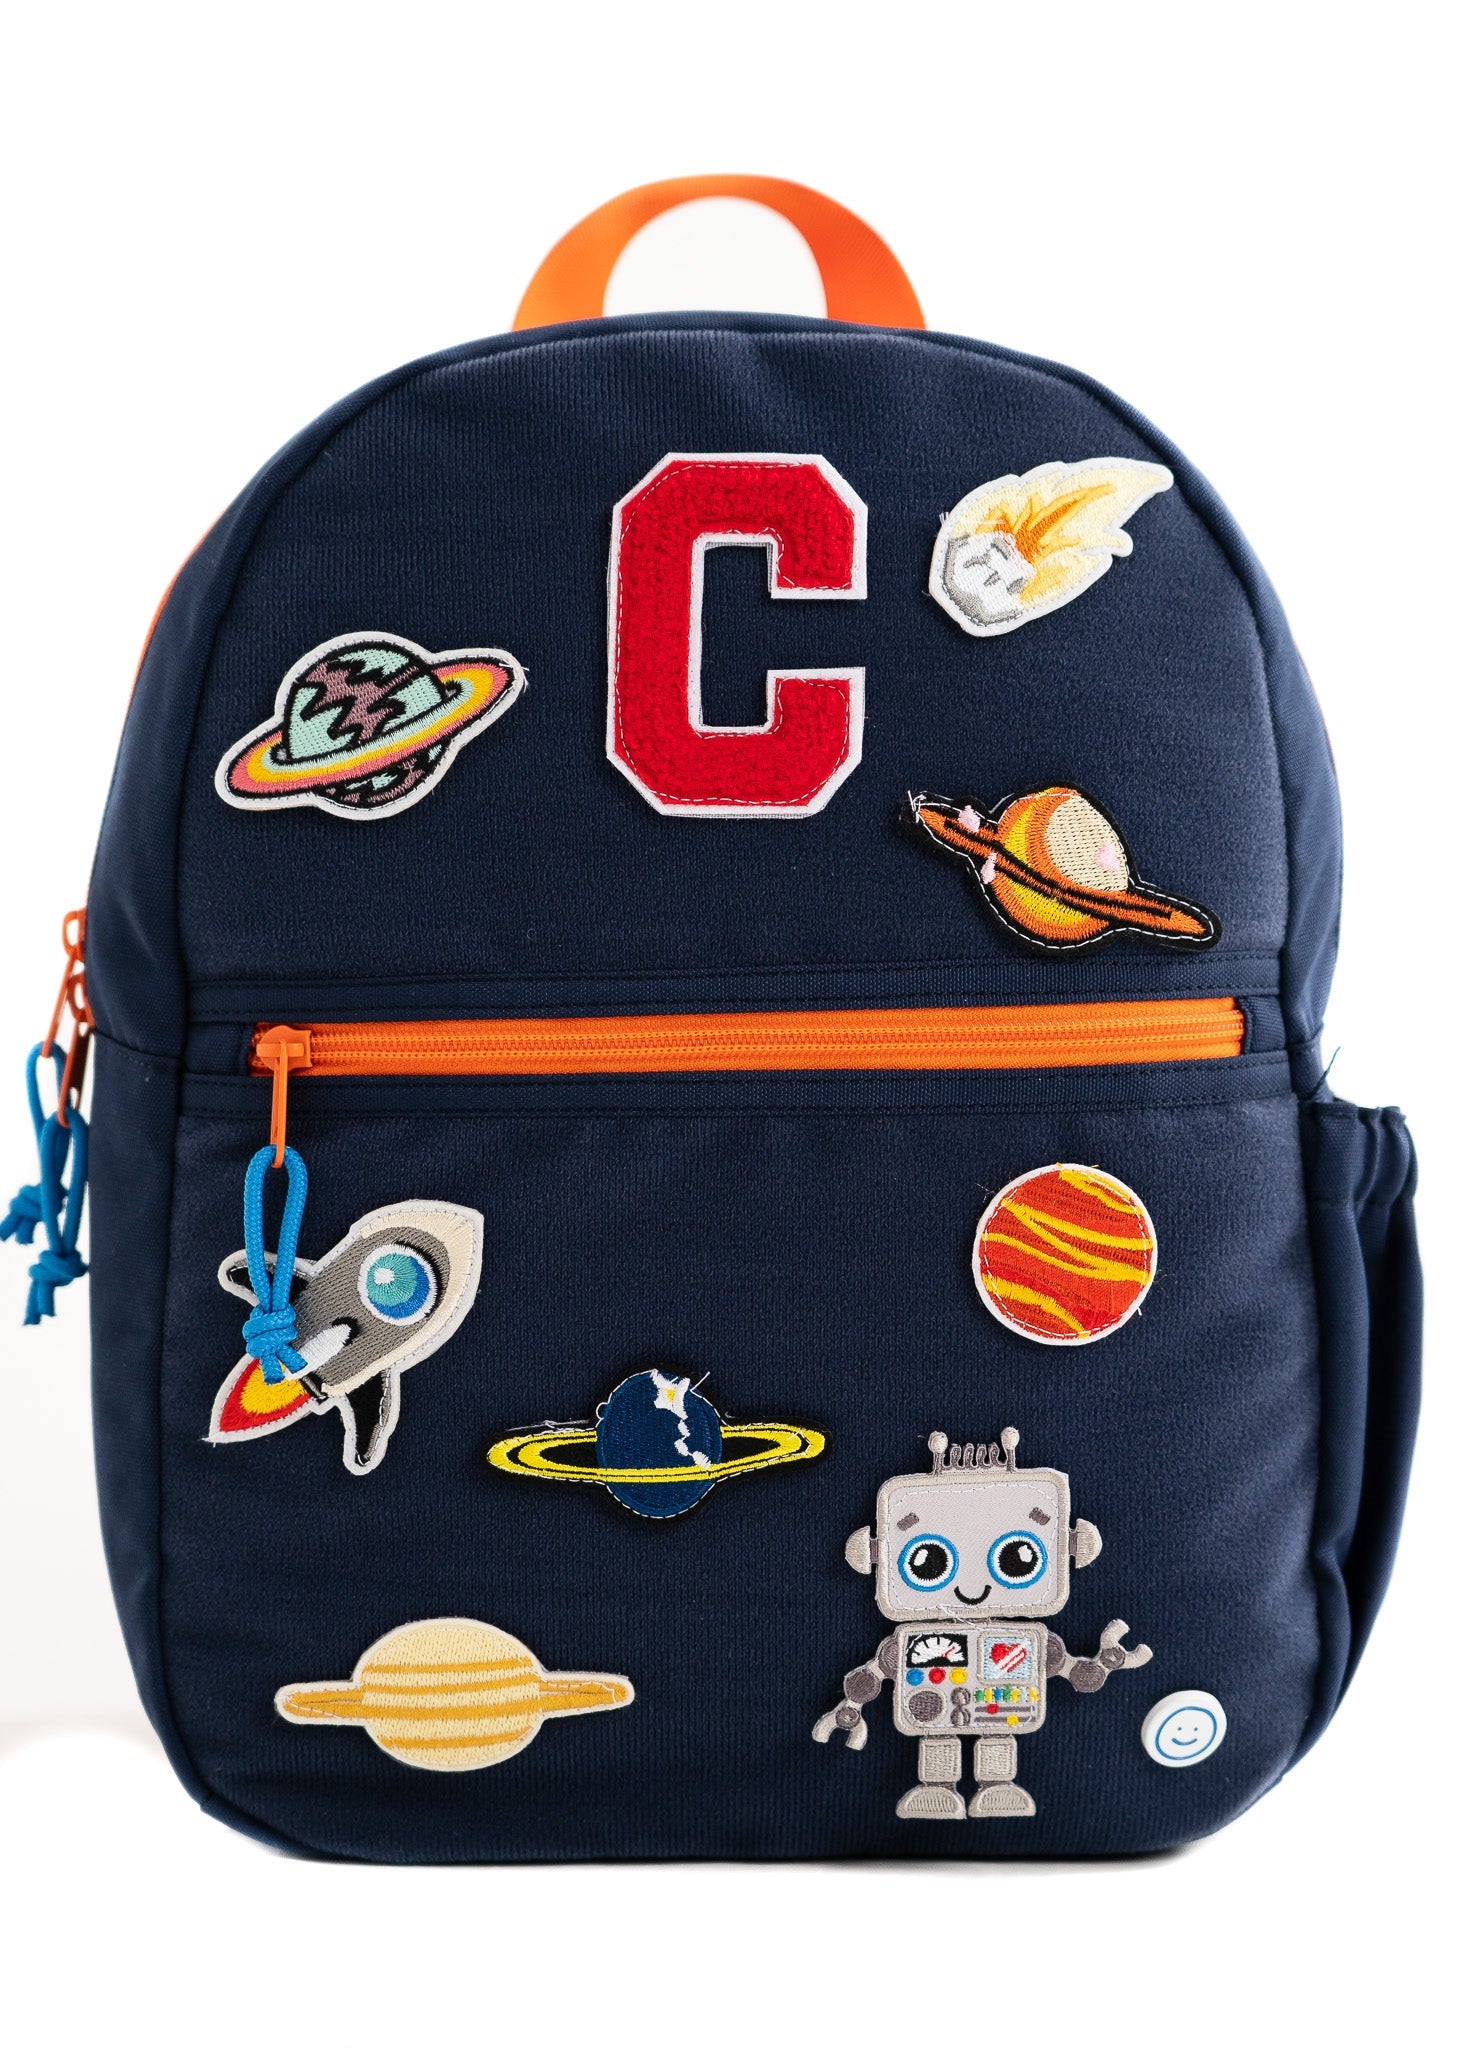 Hook & Loop Sport Kids Backpack - Navy / Citrus